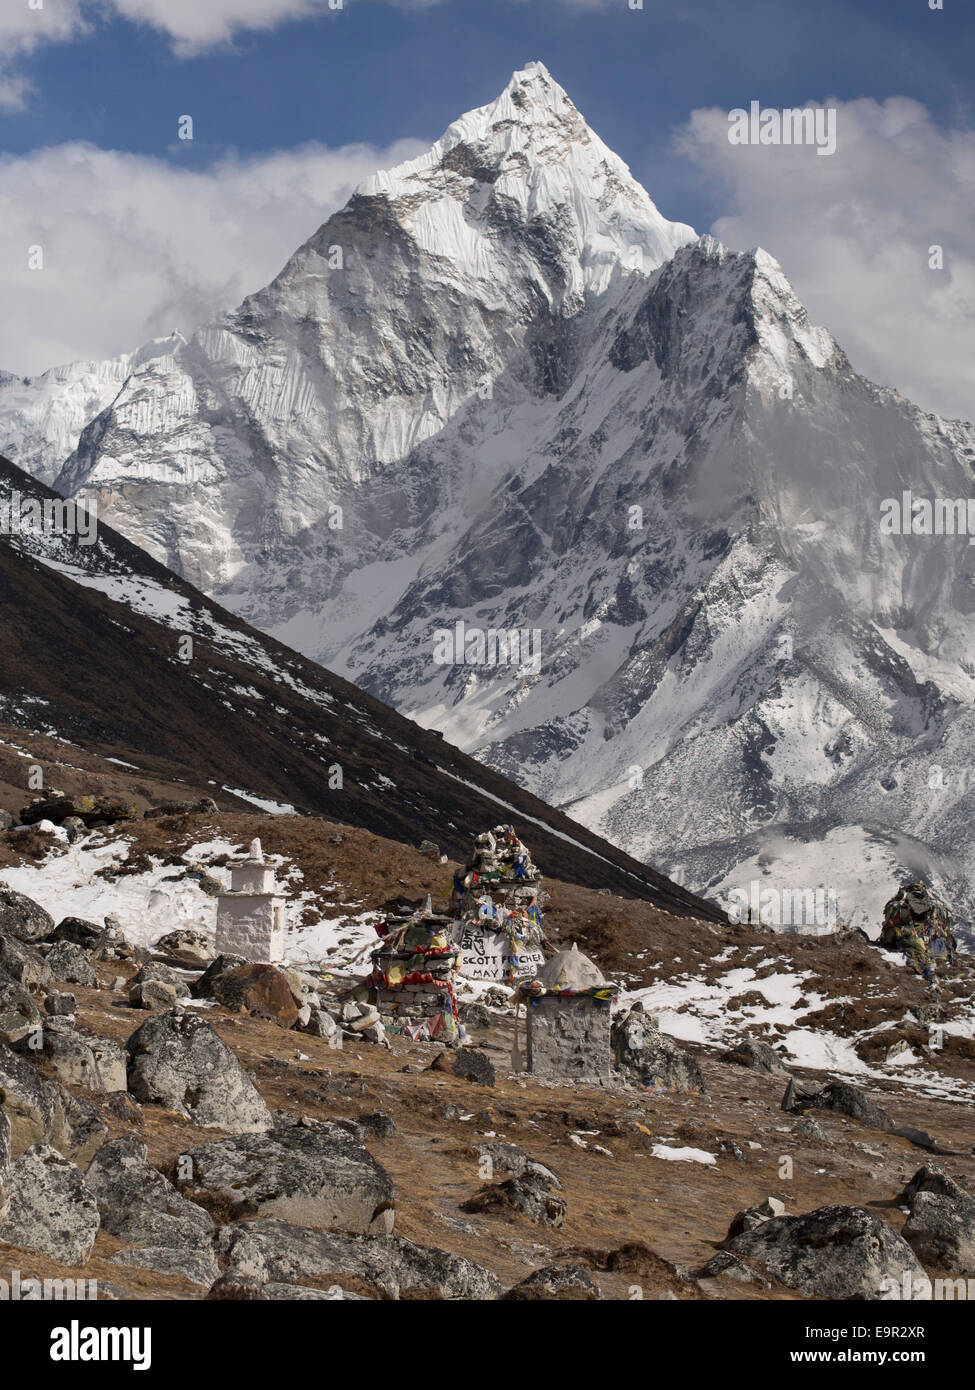 Berg Ama Dablam und Memorial Cairn auf Expedition leader Scott Fischer, der in der 1996 Everest Disaster starb, Everest Region, Nepal. Stockfoto